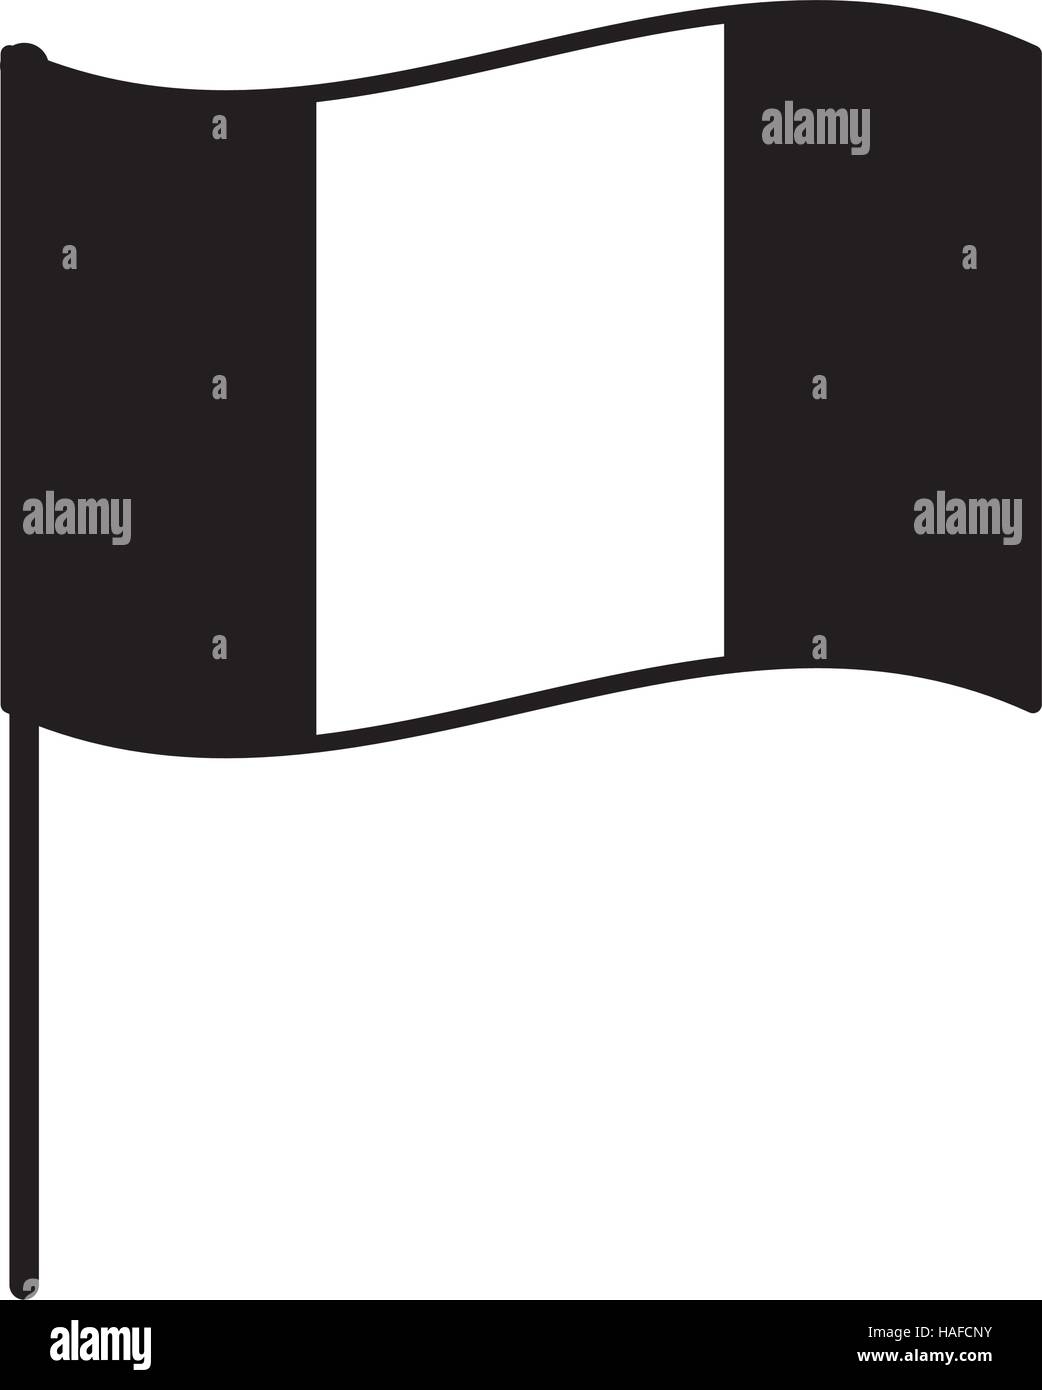 Frankreich schwarz weiße Stock-Vektorgrafik - Fahne Alamy